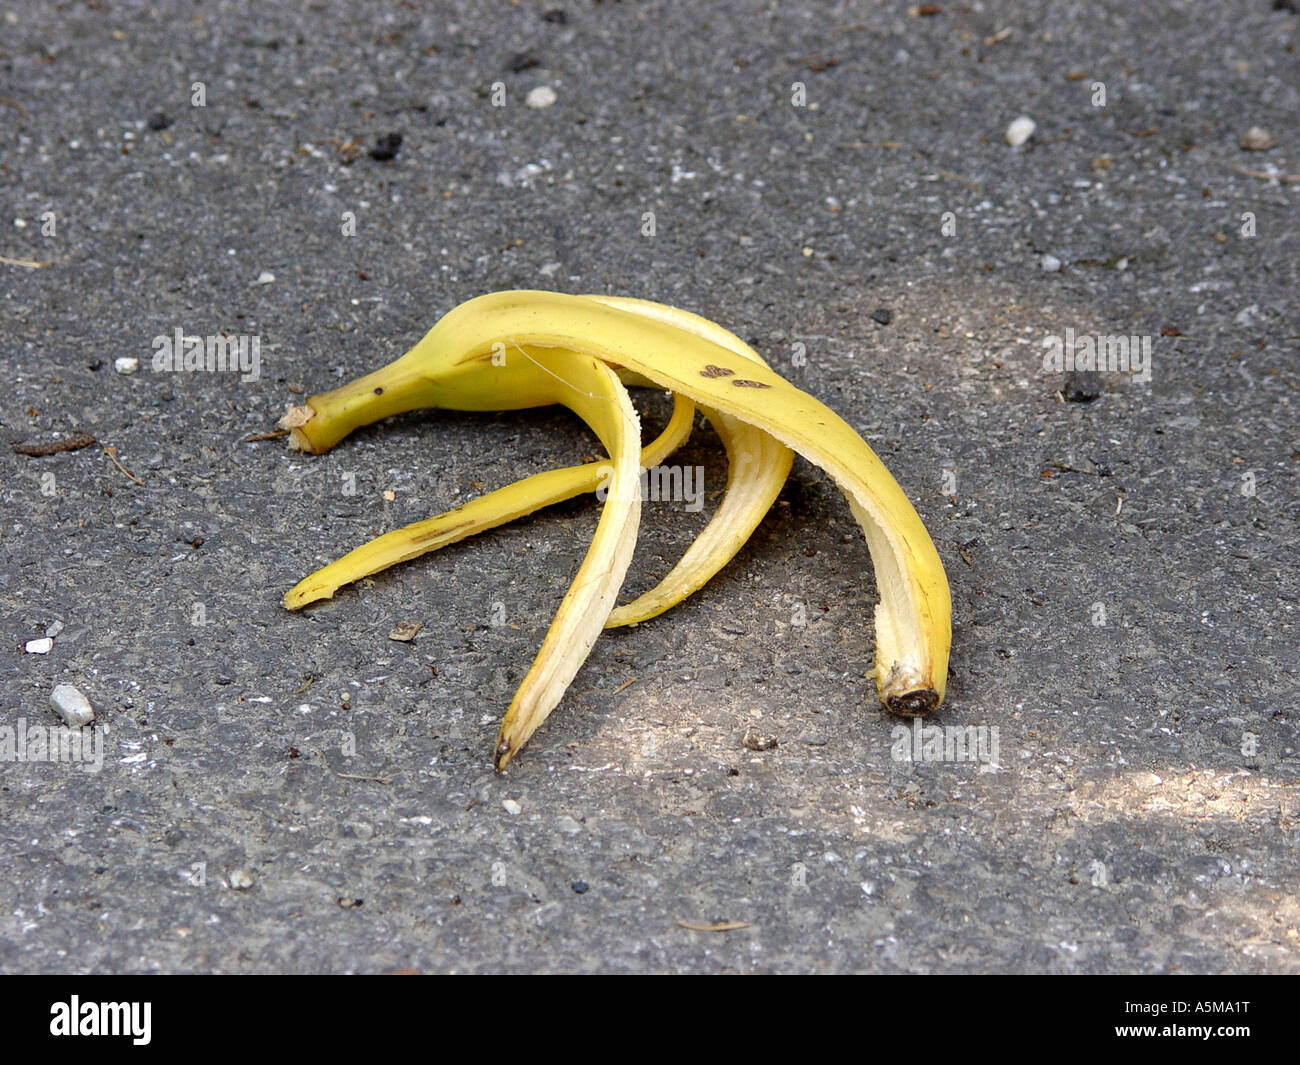 Bananenschale auf der Straße als Symbol für Ausrutschen Hinfallen usw Banana skin on the road as symbol for slipping falling dow Stock Photo